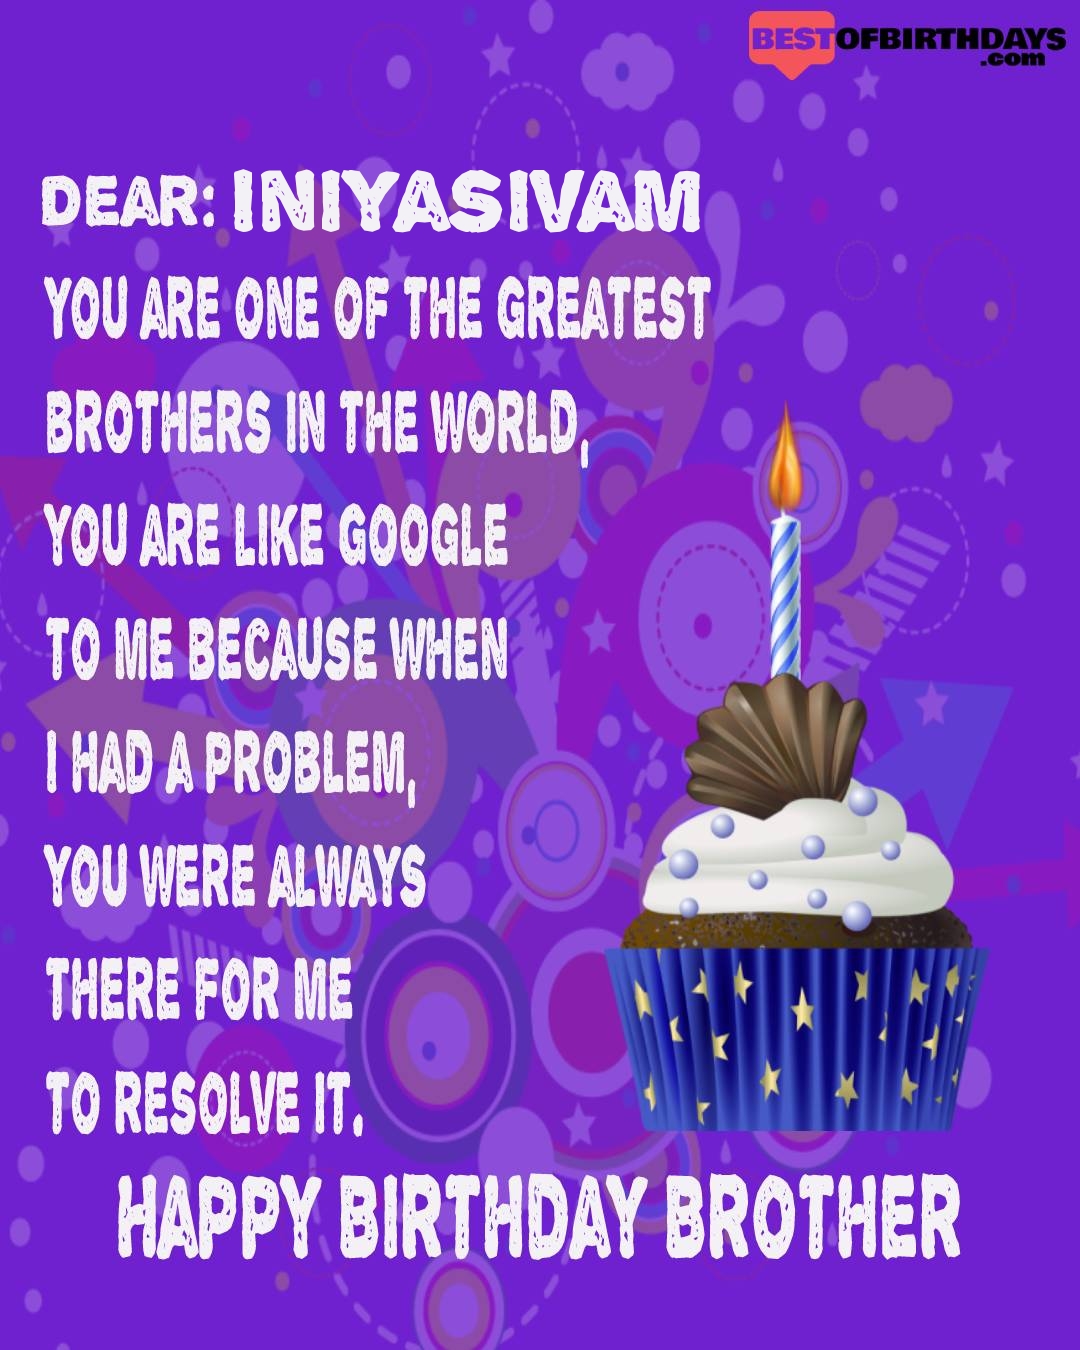 Happy birthday iniyasivam bhai brother bro